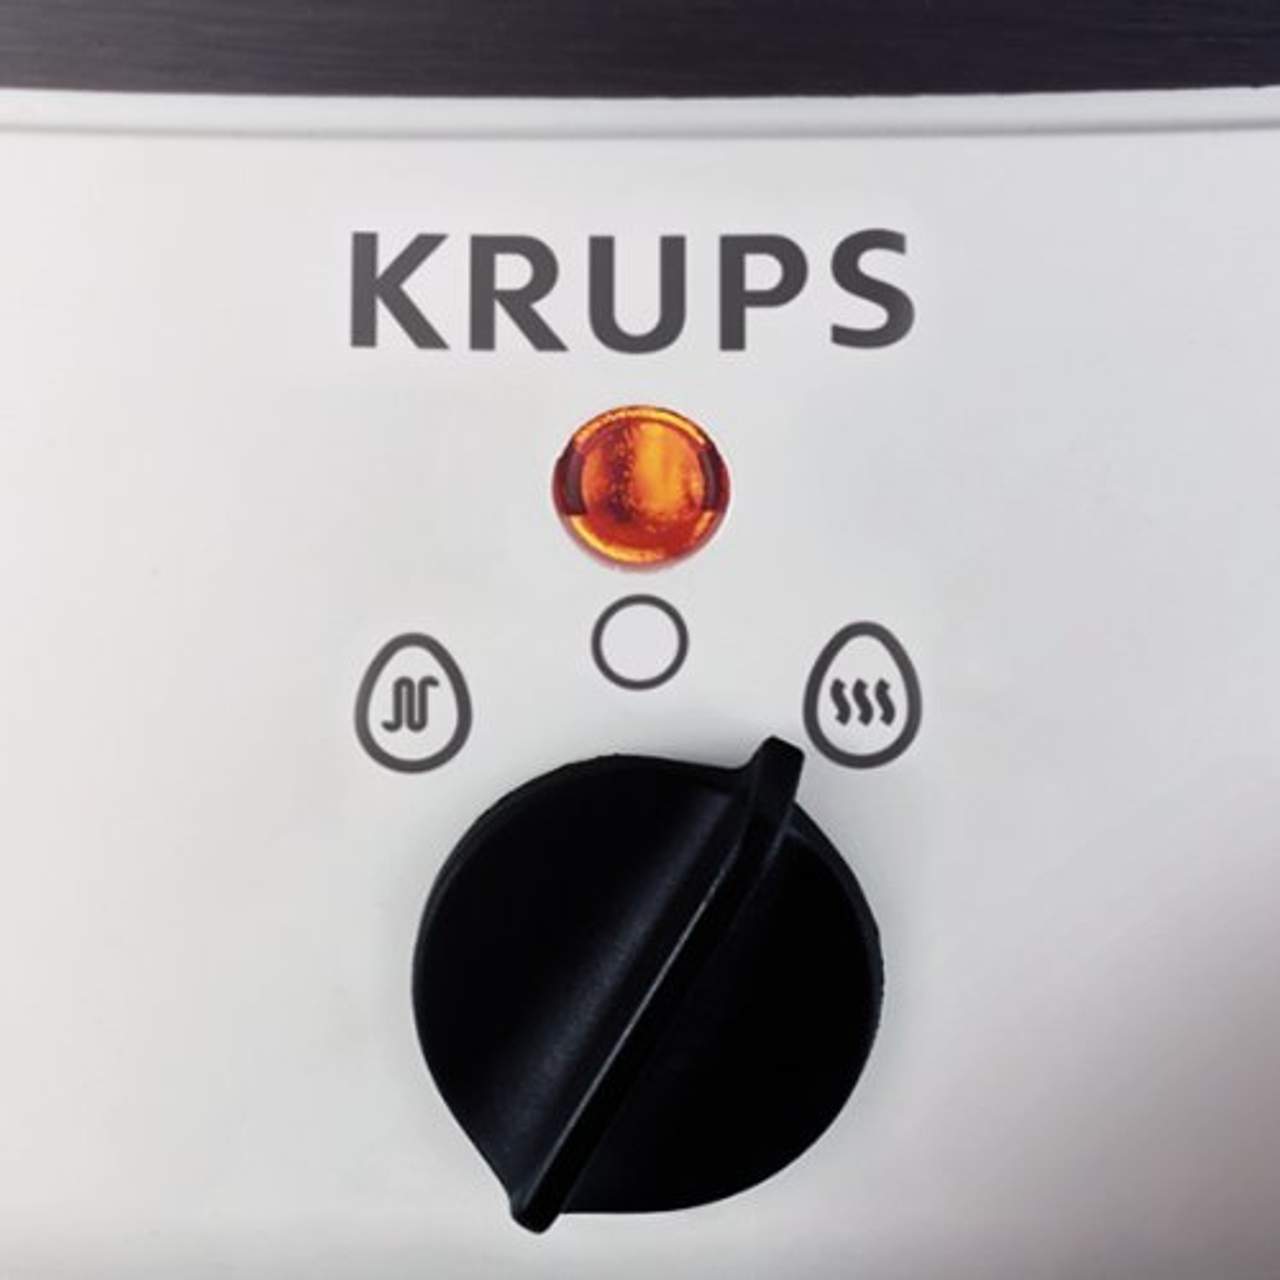 Krups F230-70 Ovomat Super Eierkocher weiss